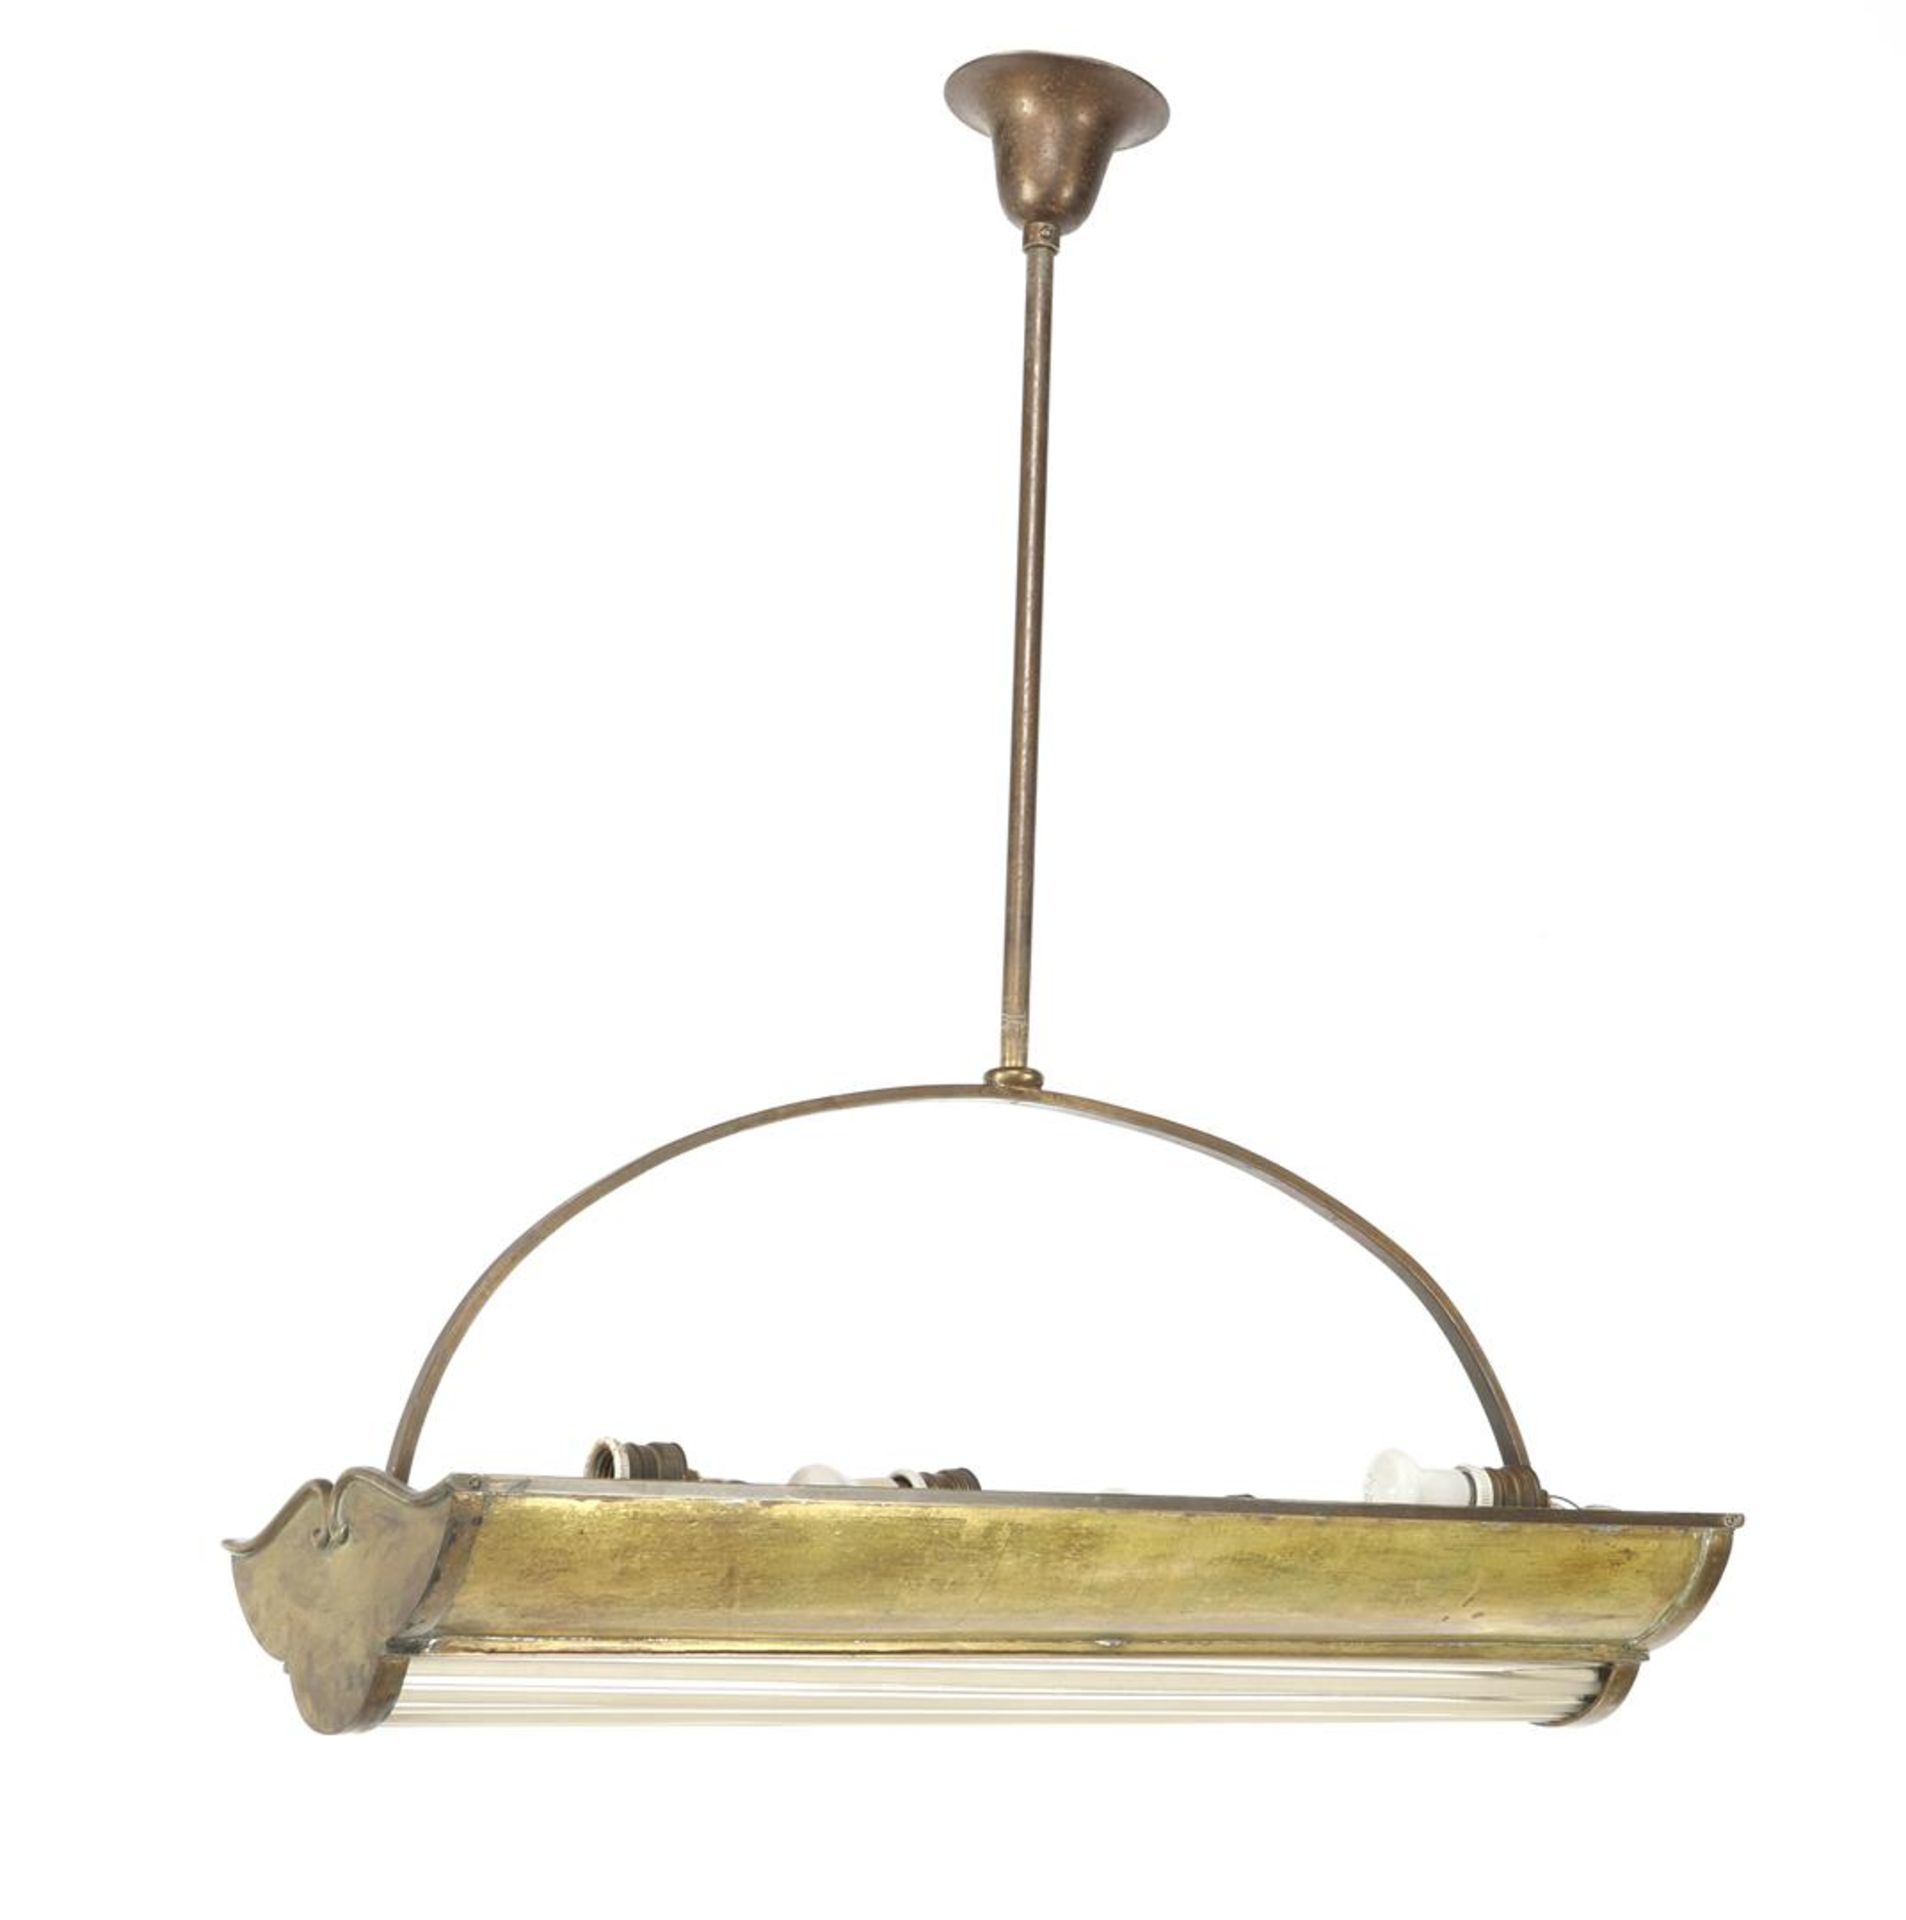 Jugendstil-Art Deco hanging lamp